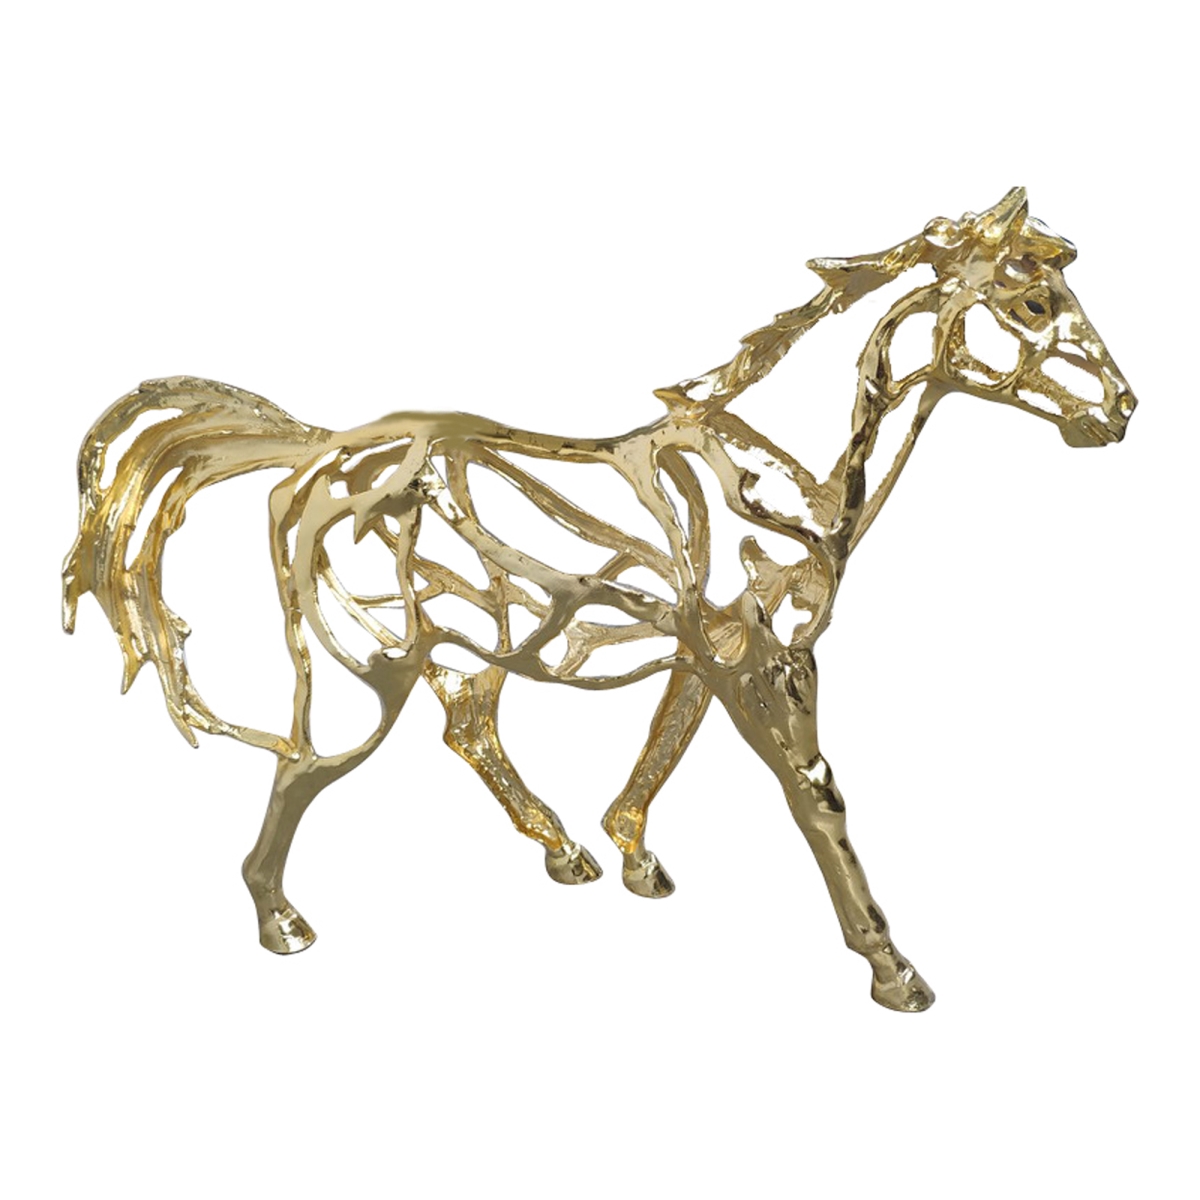 La-1078-32 Golden Horse Wall Sculpture